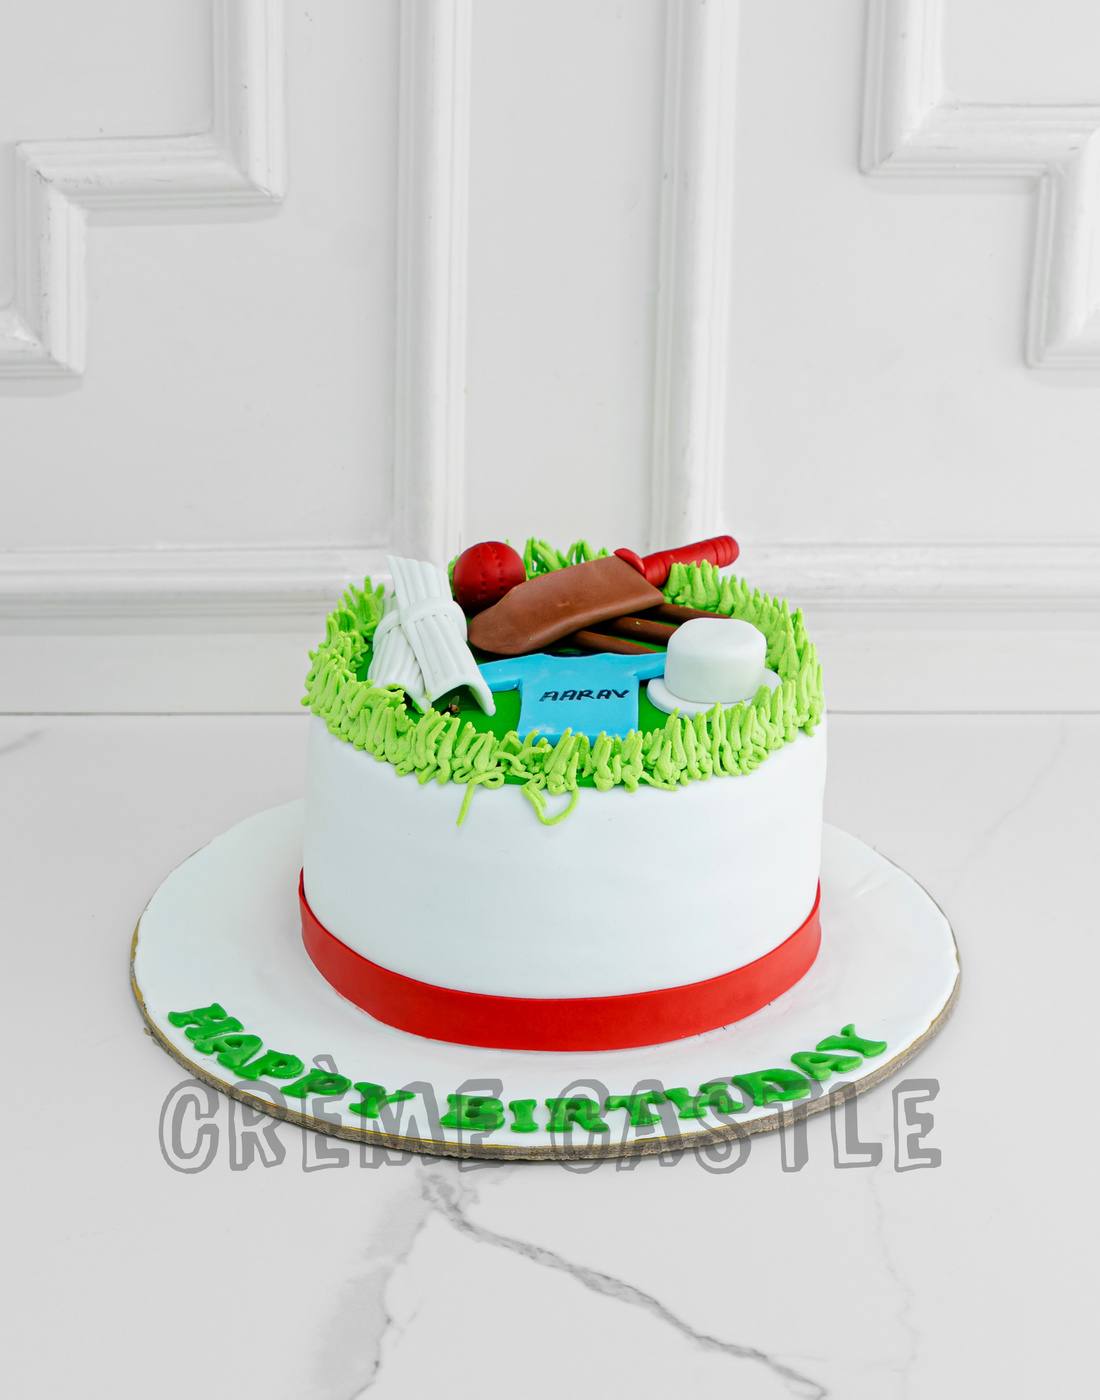 Cricket theme Cake - KovaiKrsbakery